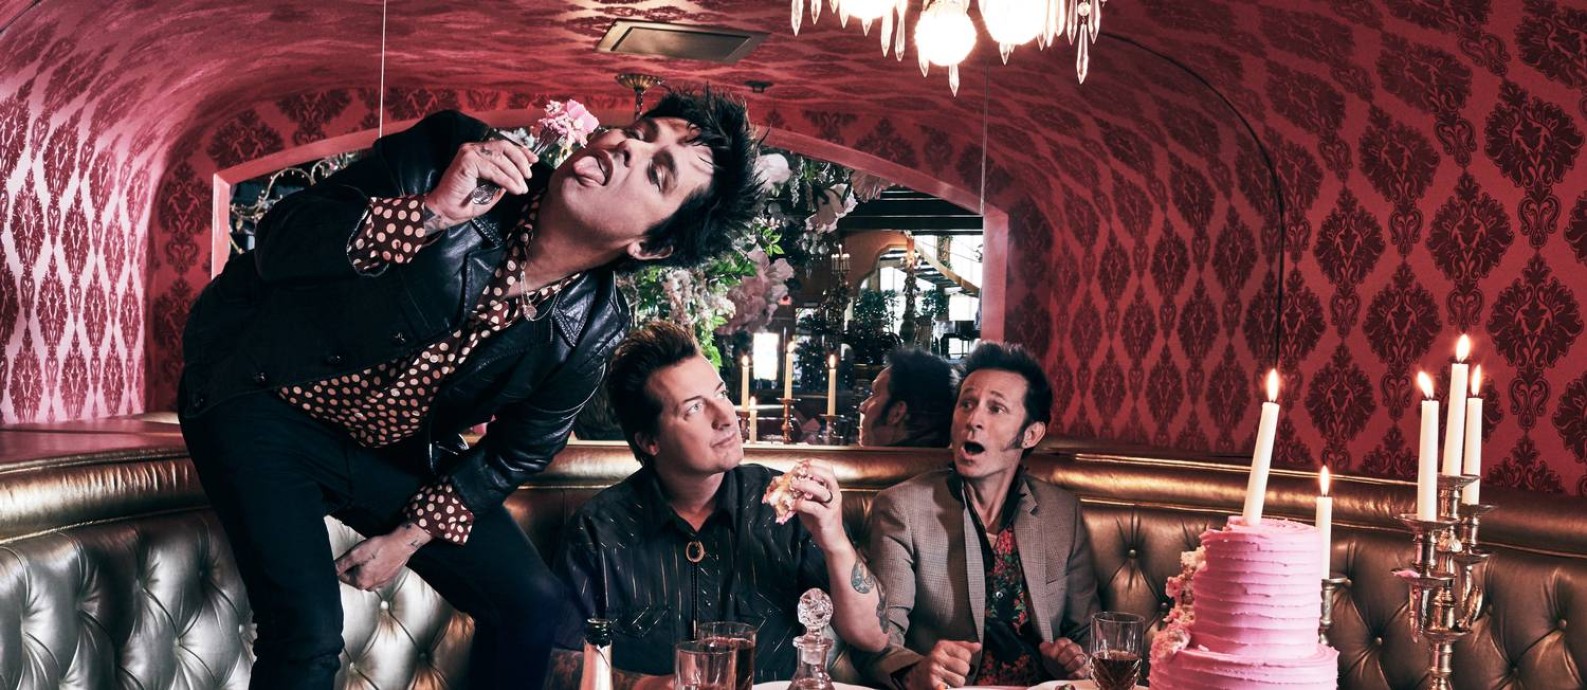 O grupo americano Green Day Foto: Pamela Littky / Divulgação